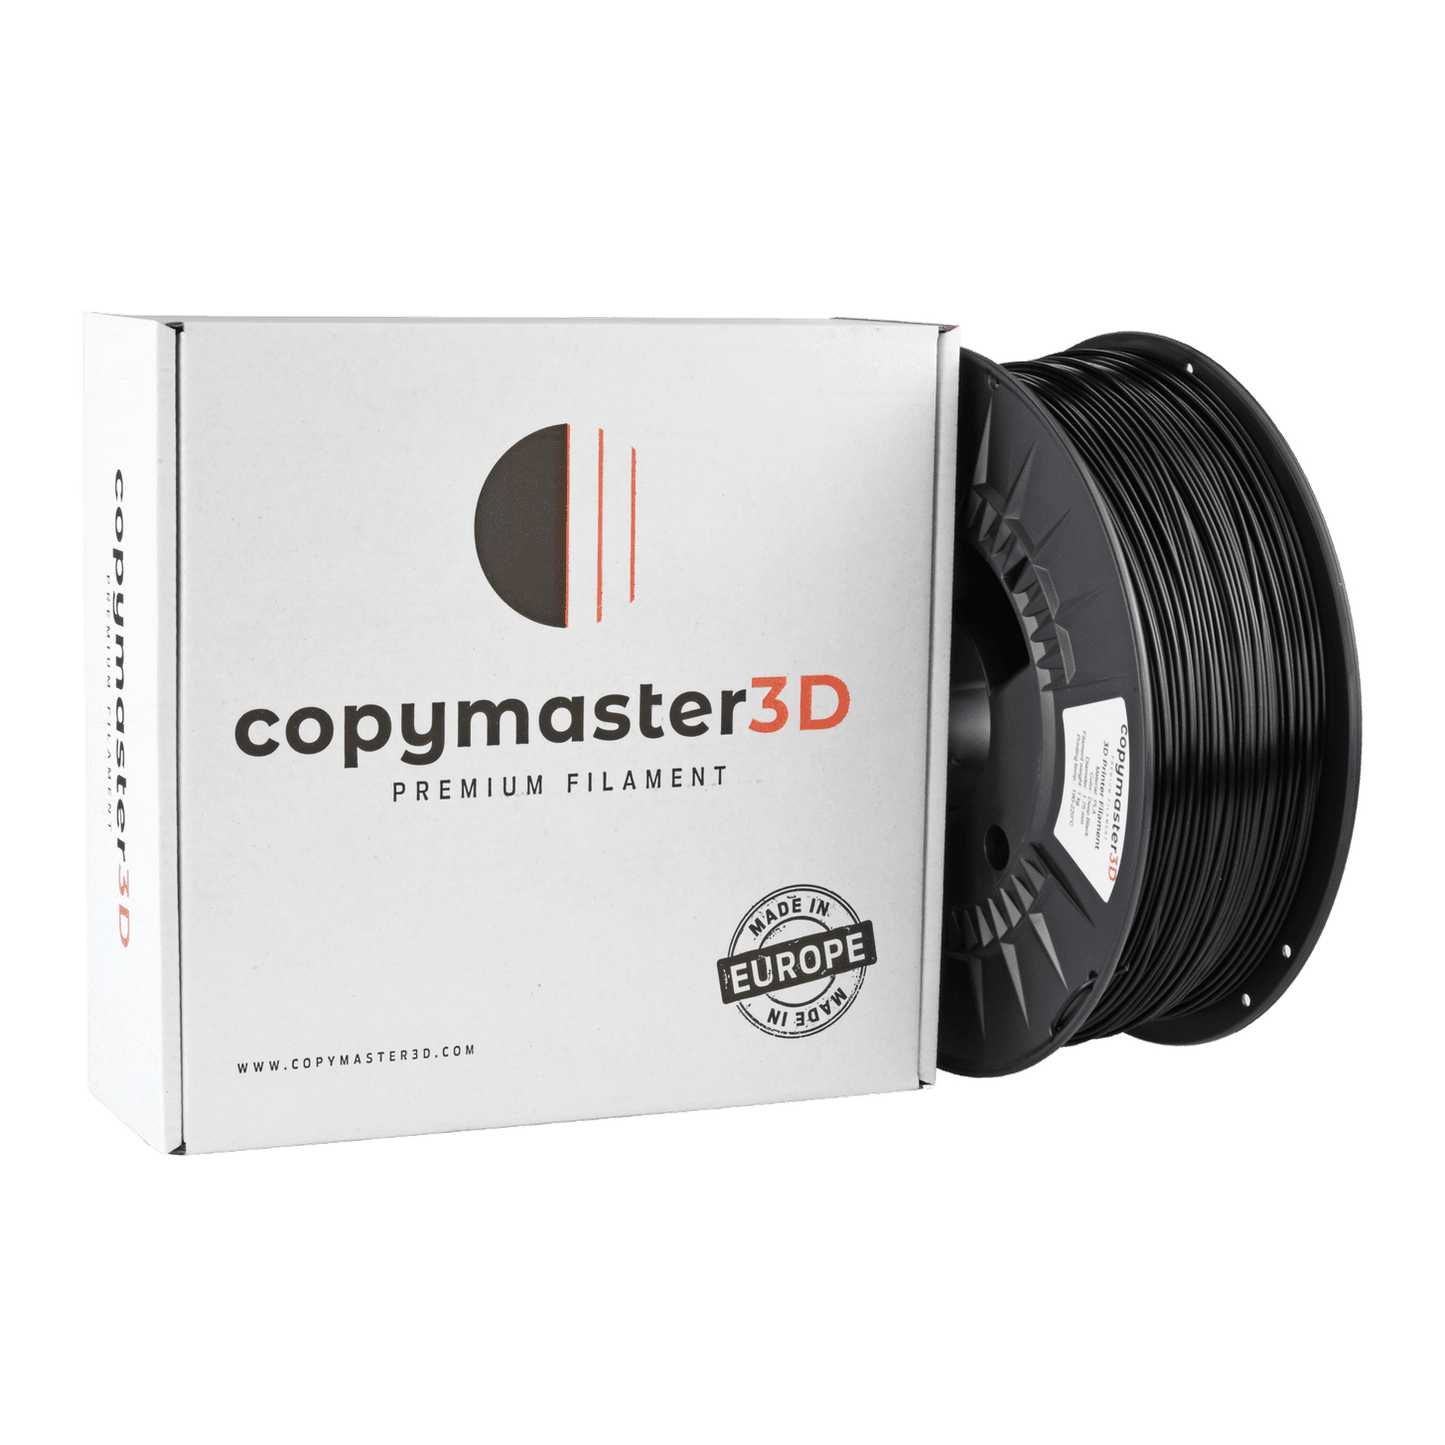 Copymaster3D Premium PLA Filament 1.75mm 1KG Deep Black